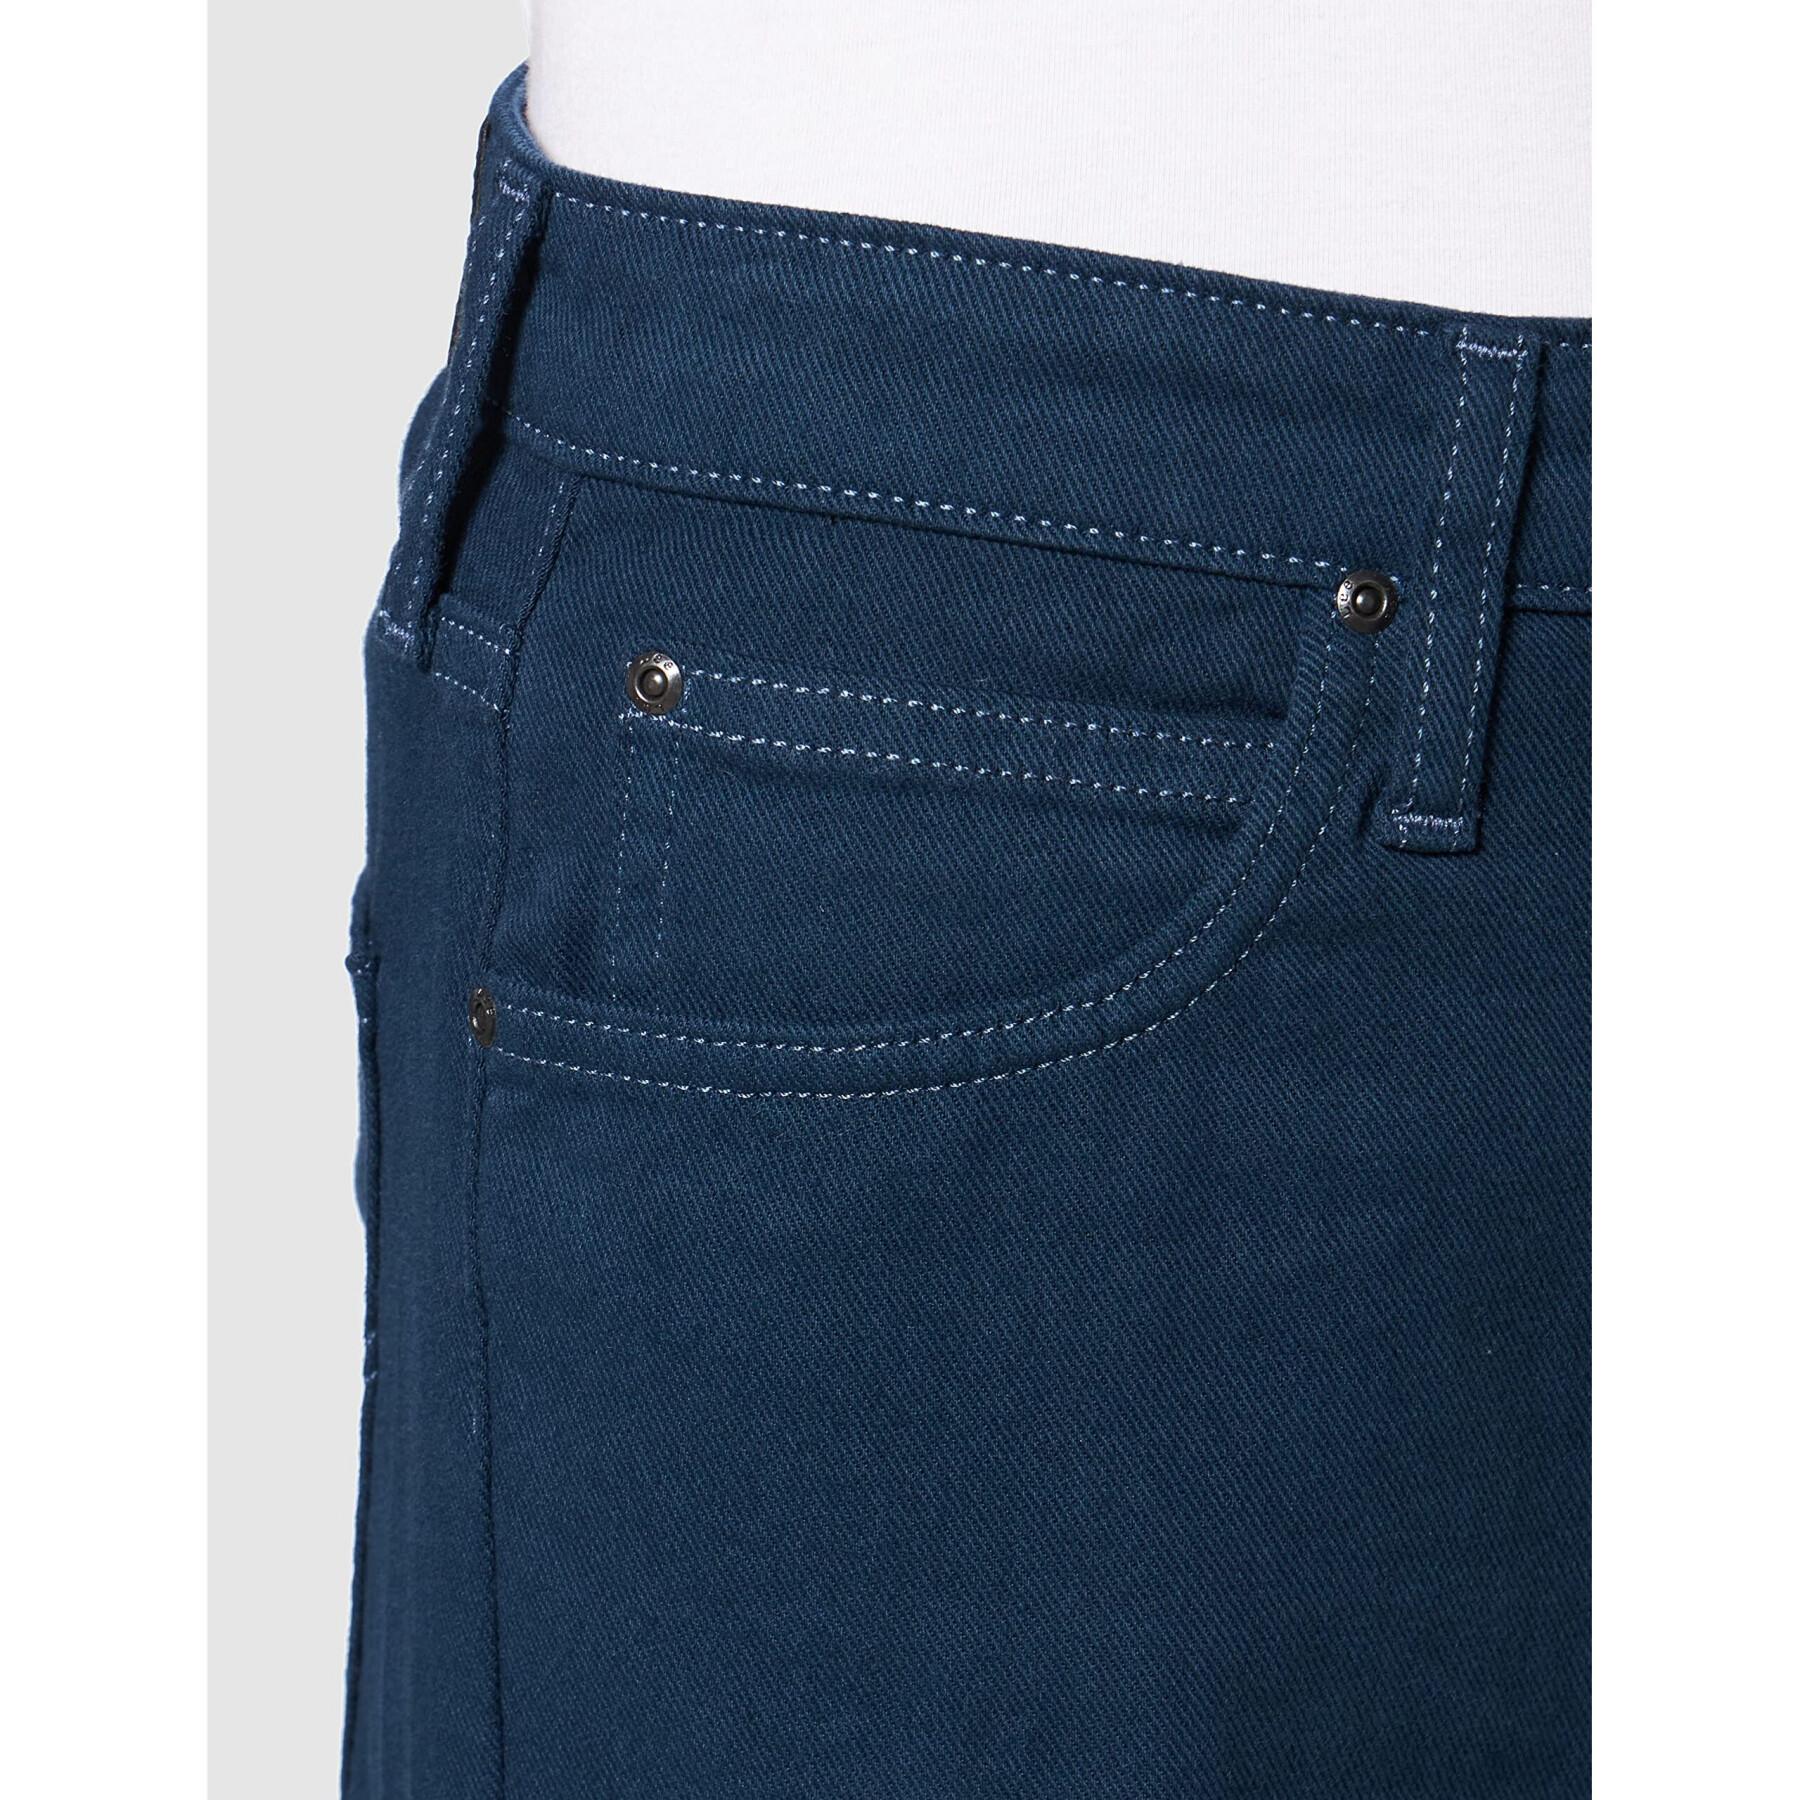 Women's jeans Lee Carol in Insignia Blue